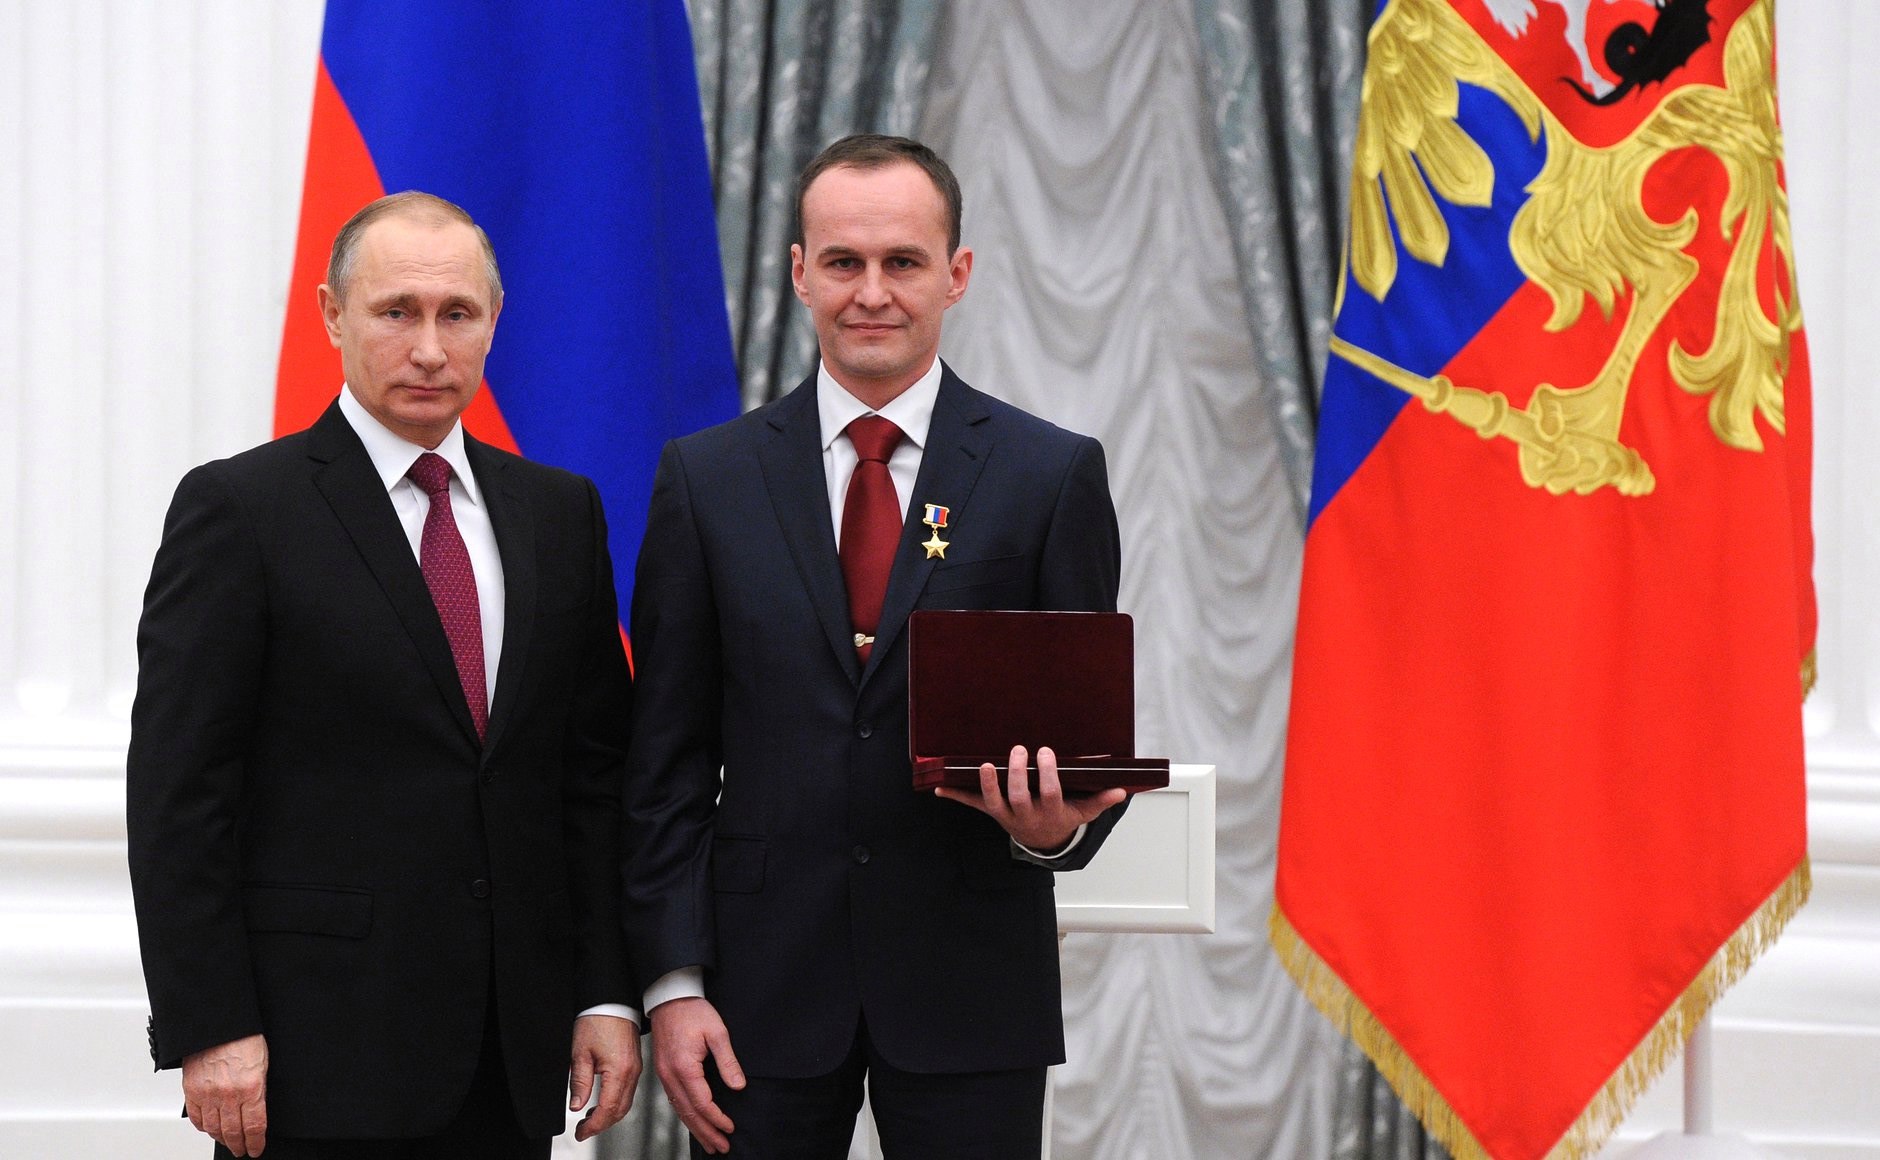 Вручение медали «Золотая Звезда» Героя России президентом Владимиром Путиным